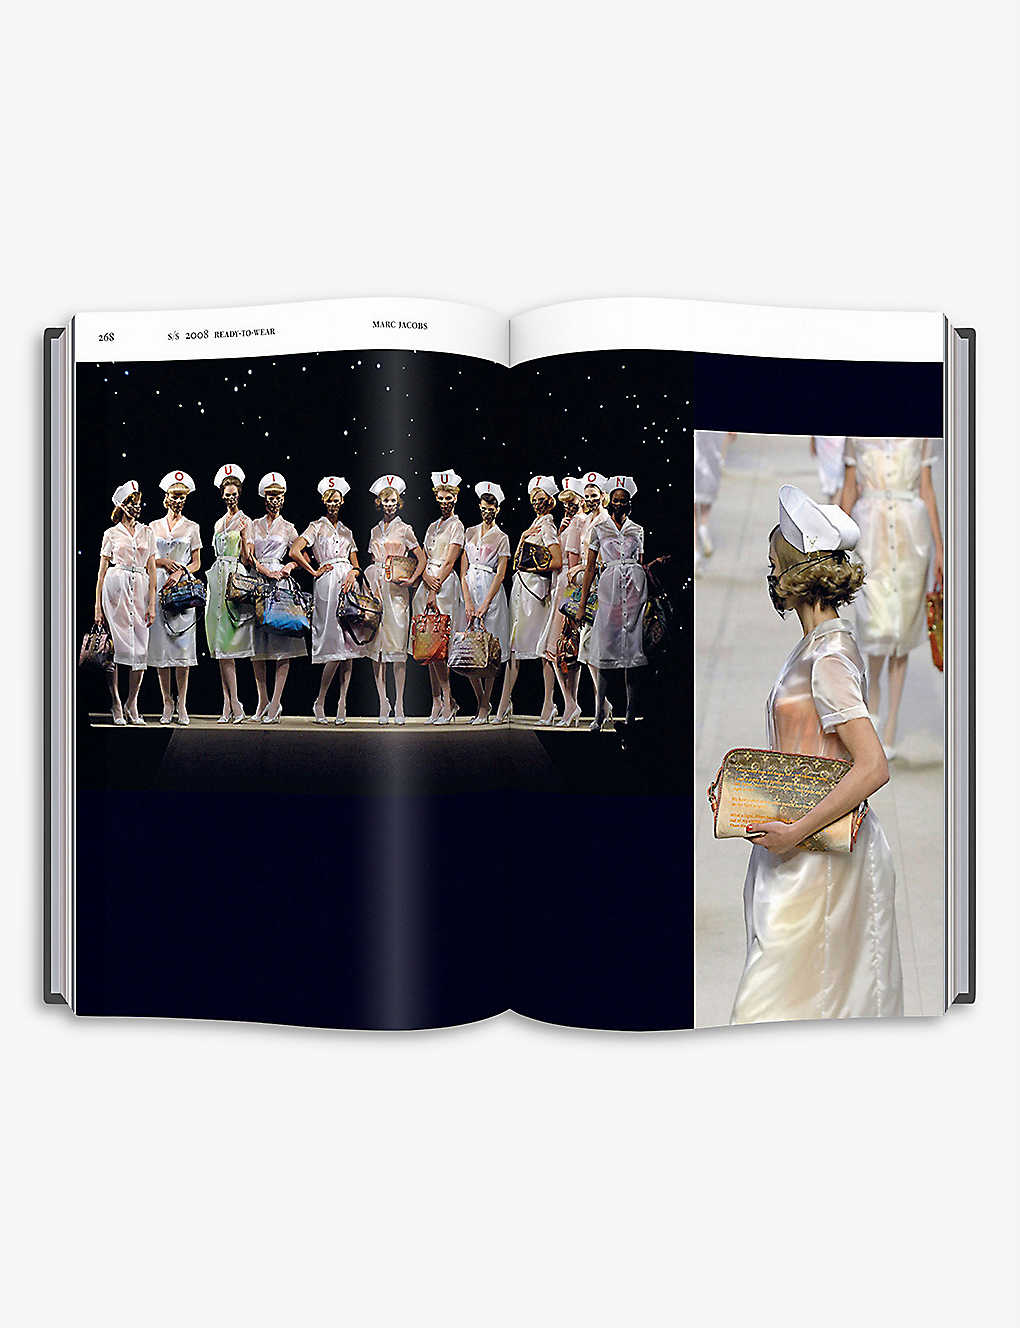 Louis Vuitton Catwalk book